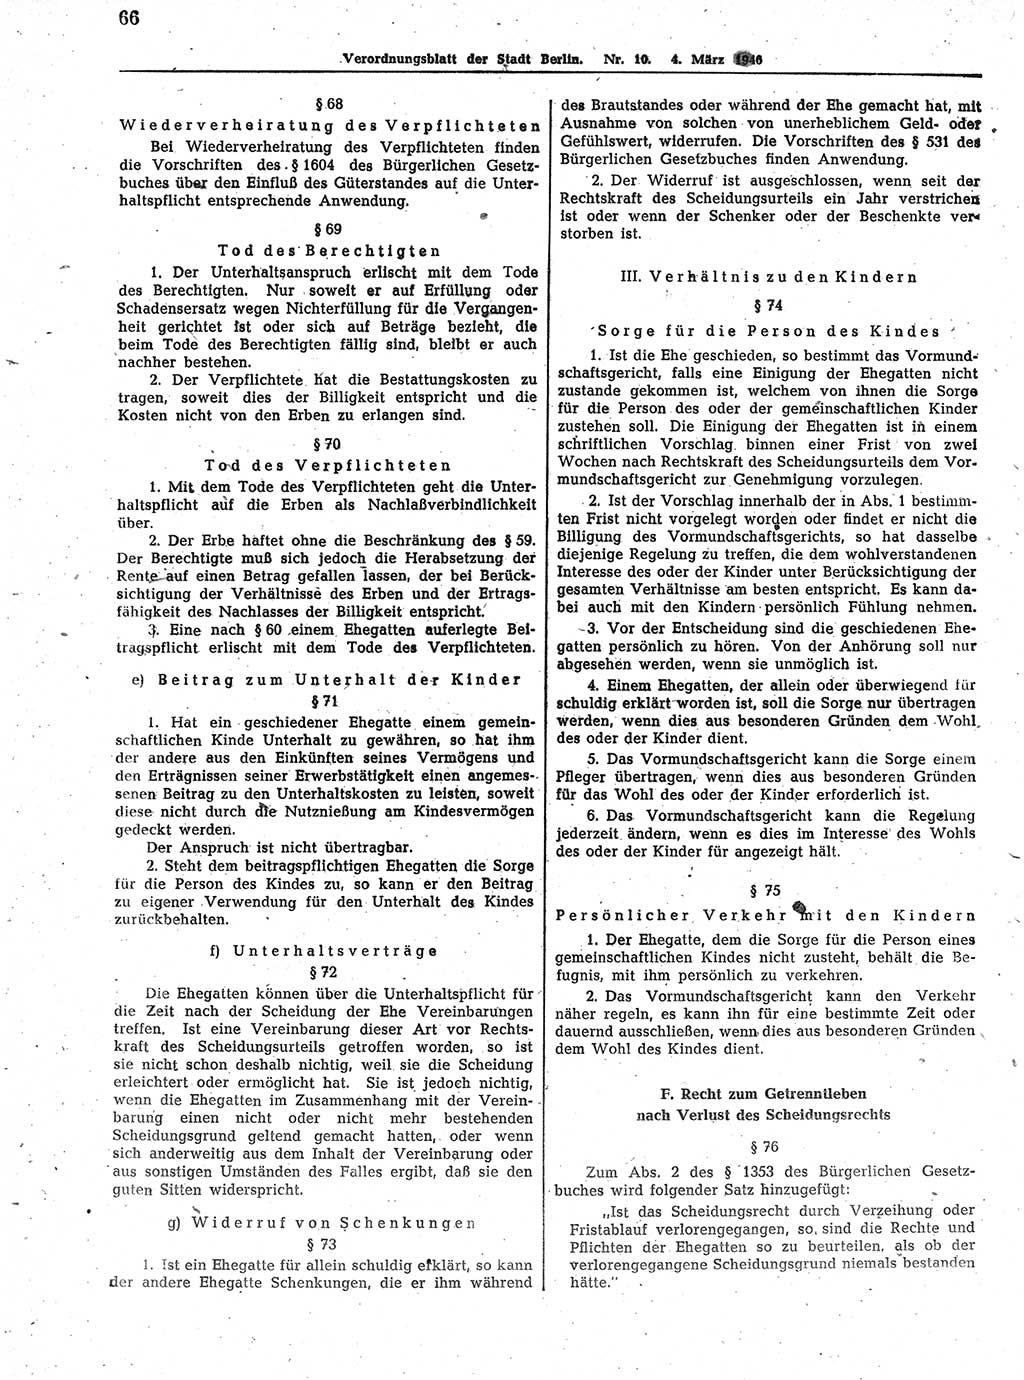 Verordnungsblatt (VOBl.) der Stadt Berlin, für Groß-Berlin 1946, Seite 66 (VOBl. Bln. 1946, S. 66)